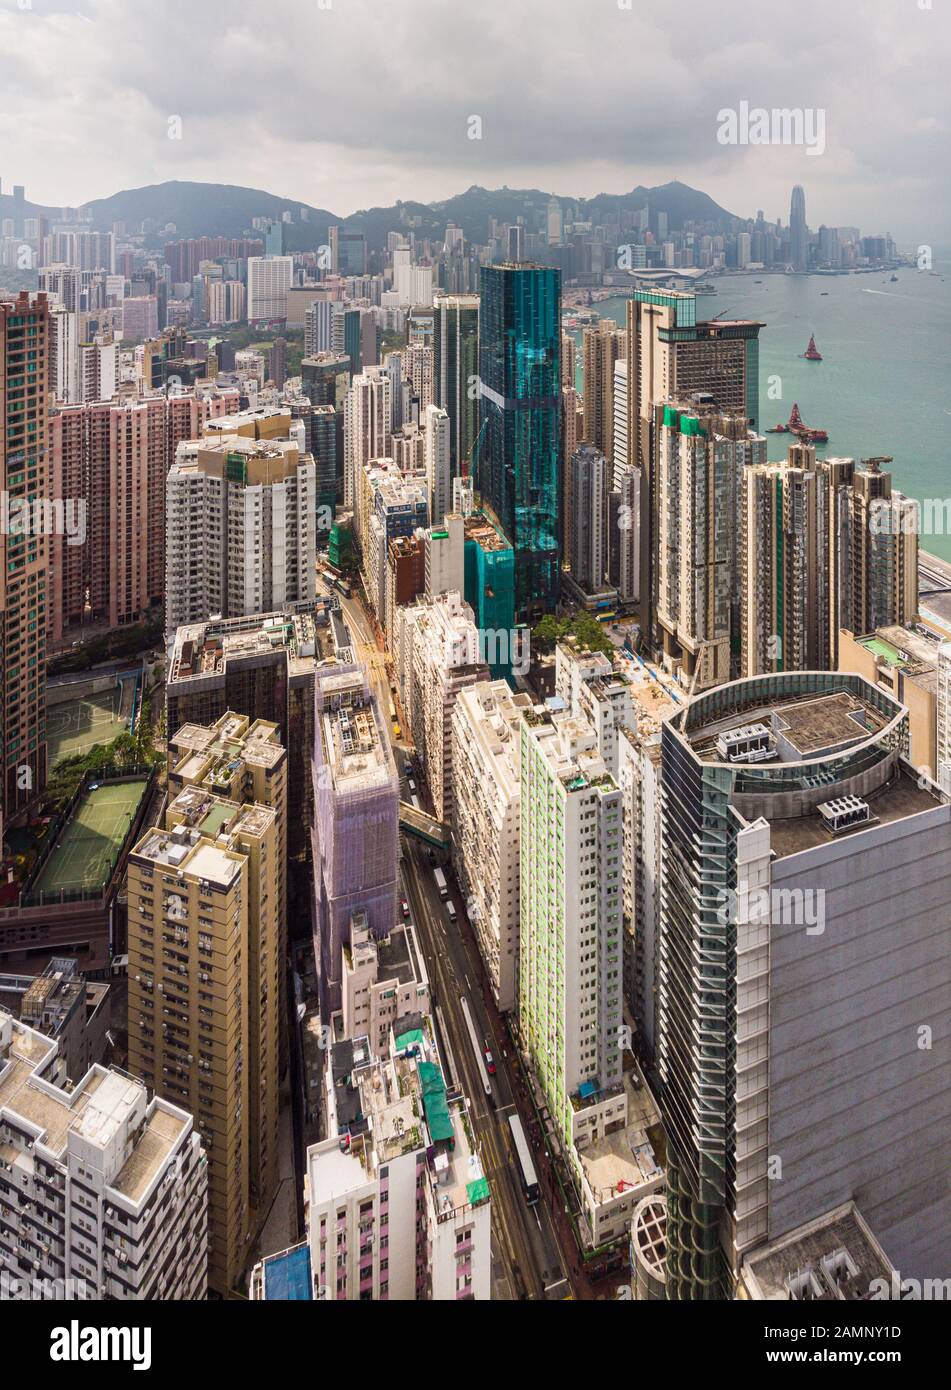 Vue aérienne du quartier très dense de North point, sur l'île de Hong Kong, près du port de Victoria Banque D'Images